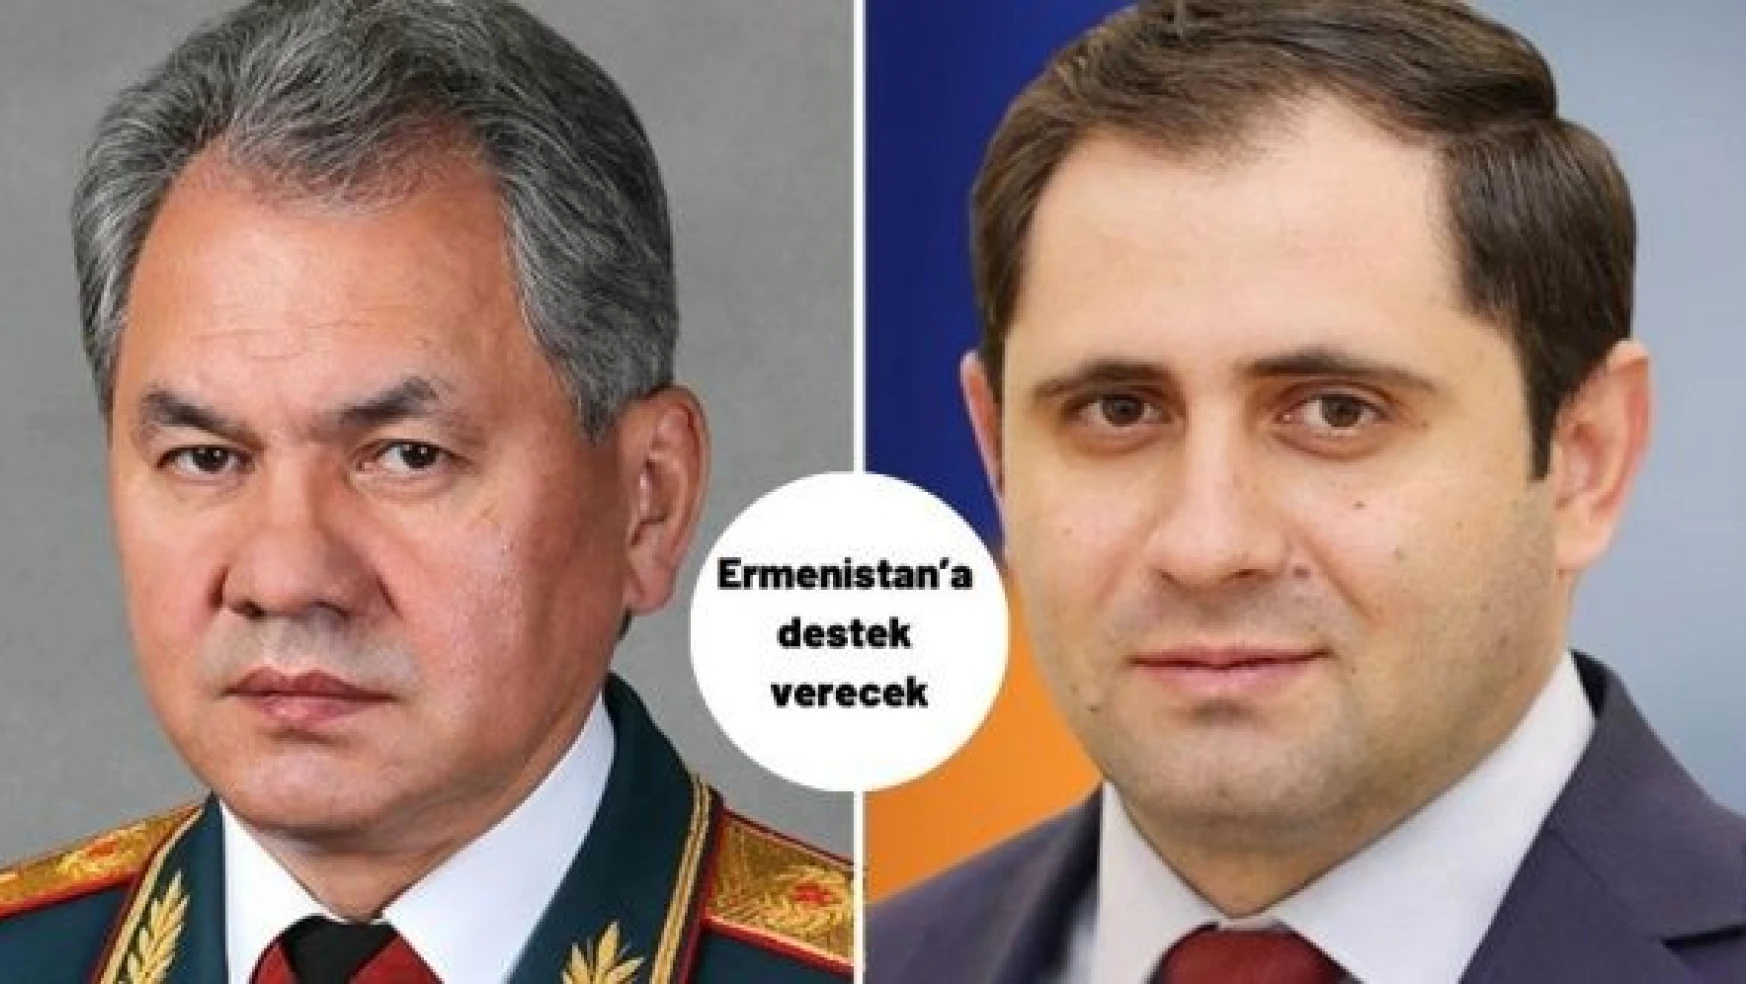 Rusya Ermenistan'a destek vereceğini açıkladı